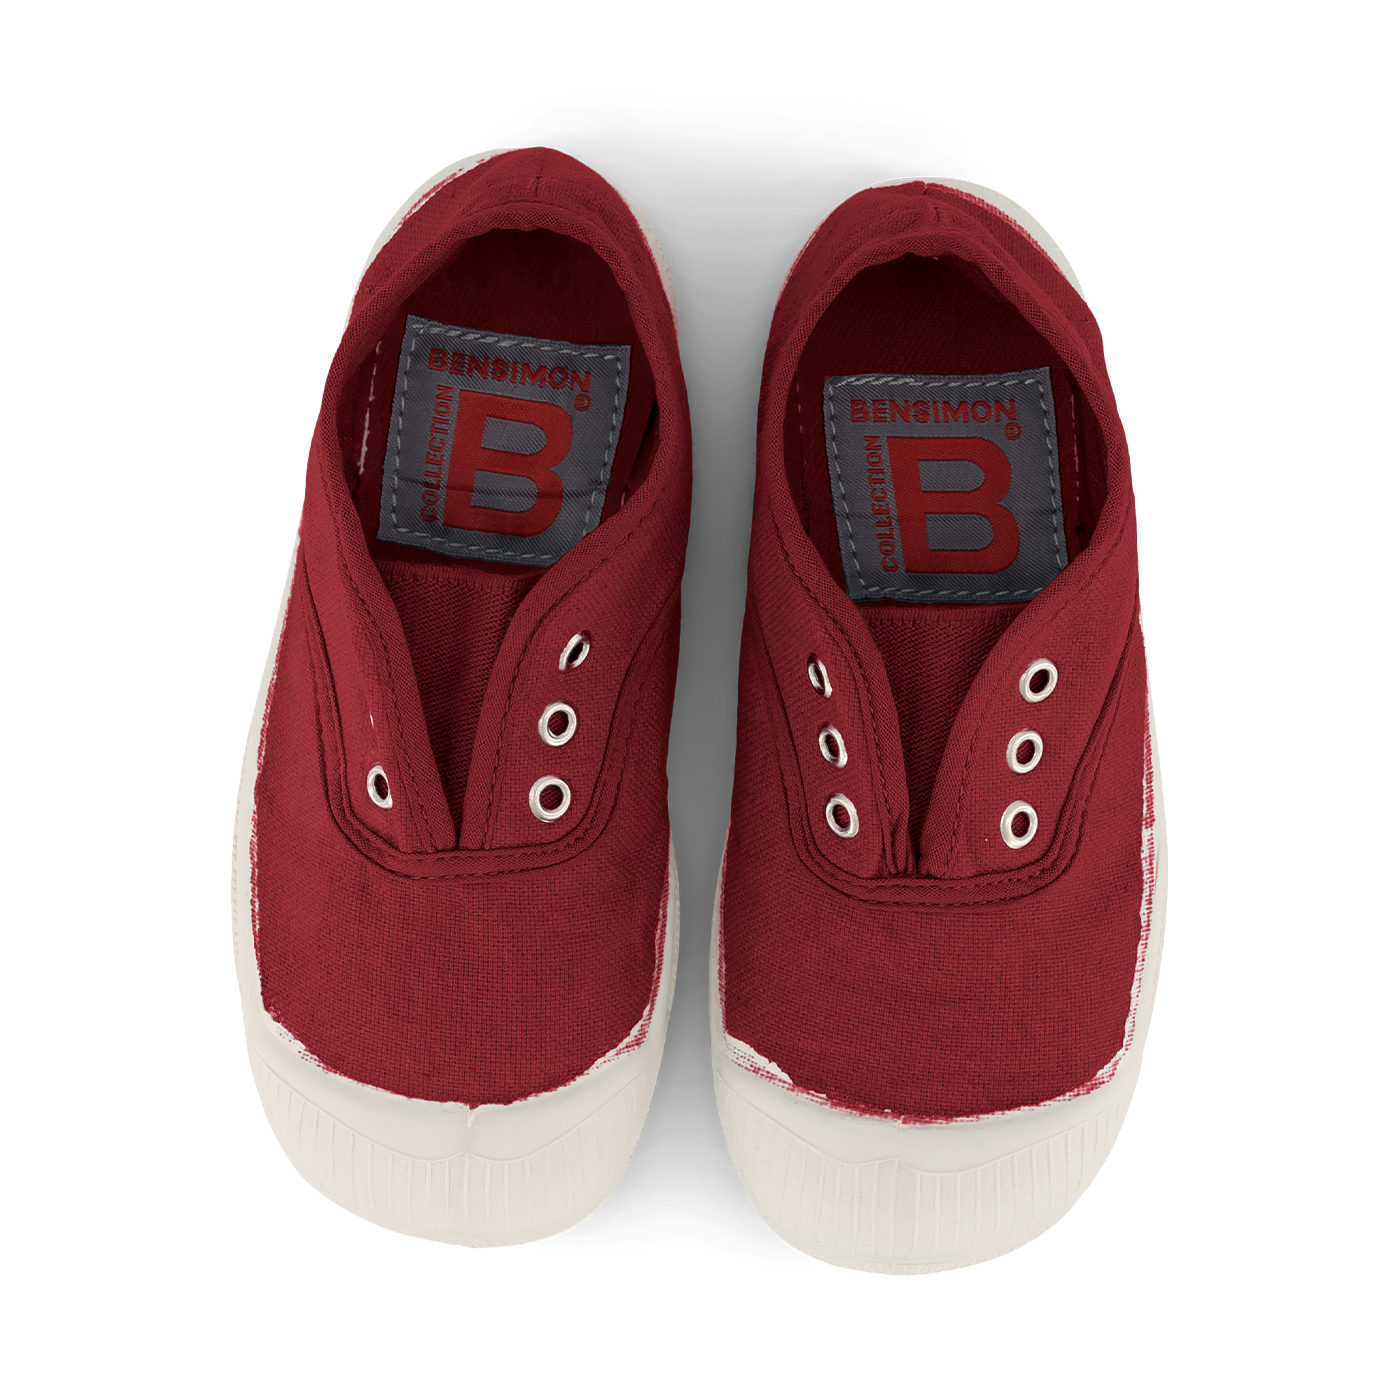  Bensimon Elly Çocuk Spor Ayakkabı  | Amarante